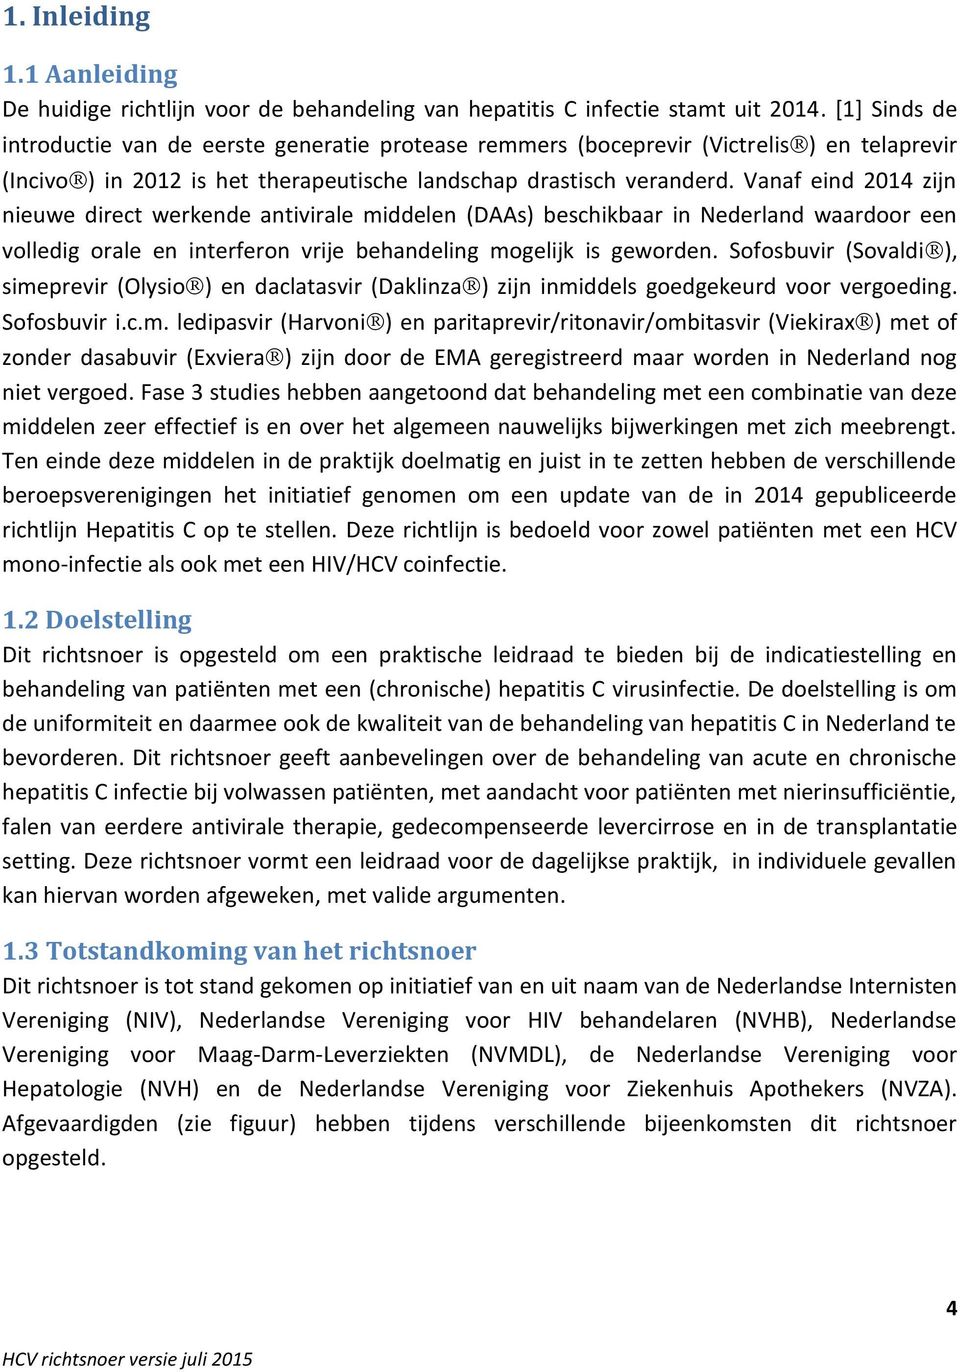 Vanaf eind 2014 zijn nieuwe direct werkende antivirale middelen (DAAs) beschikbaar in Nederland waardoor een volledig orale en interferon vrije behandeling mogelijk is geworden.